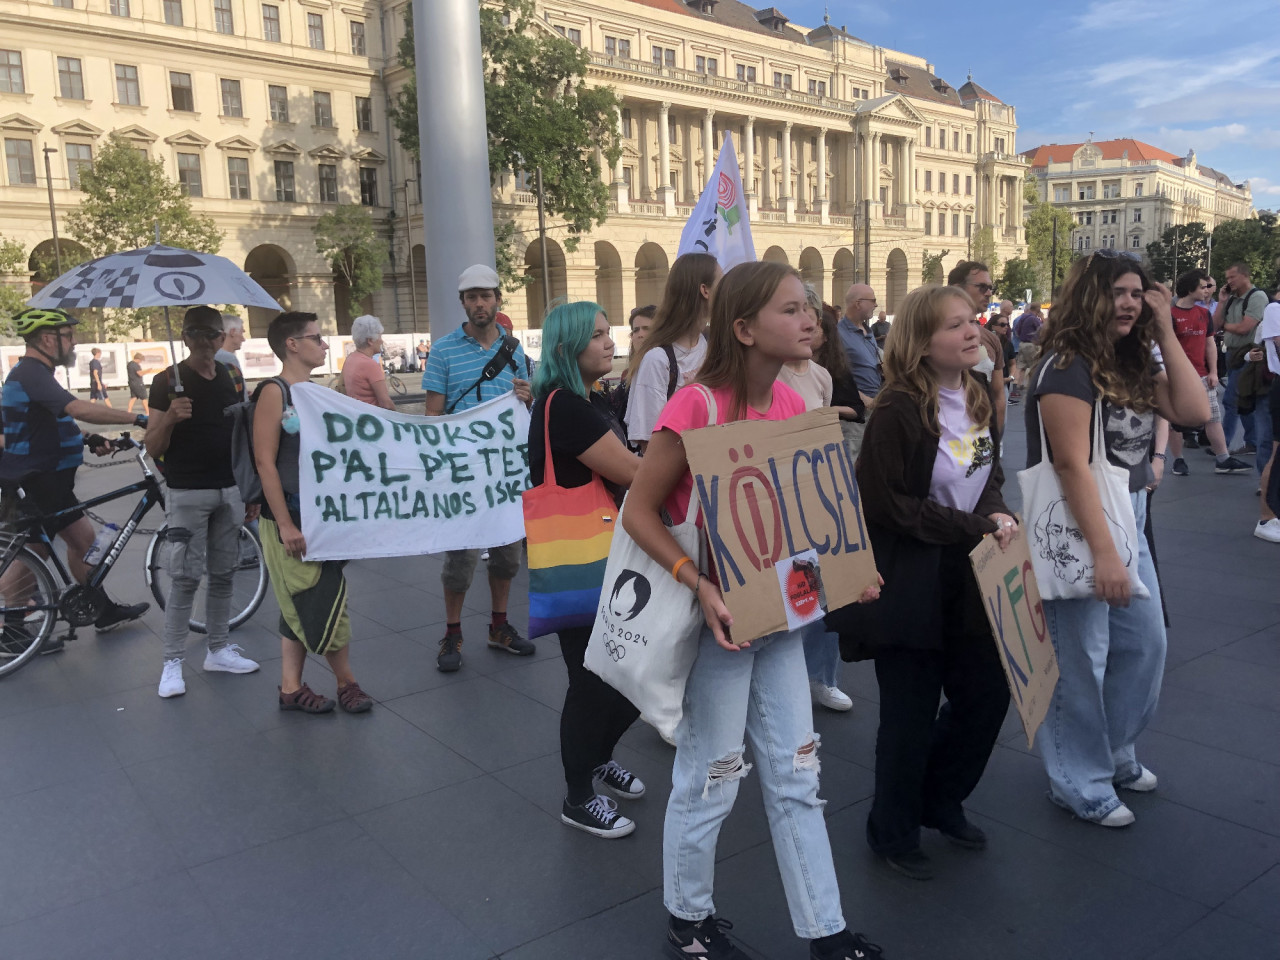  A Kossuth téren nyitják meg a tanévet a tiltakozó diákok és tanárok